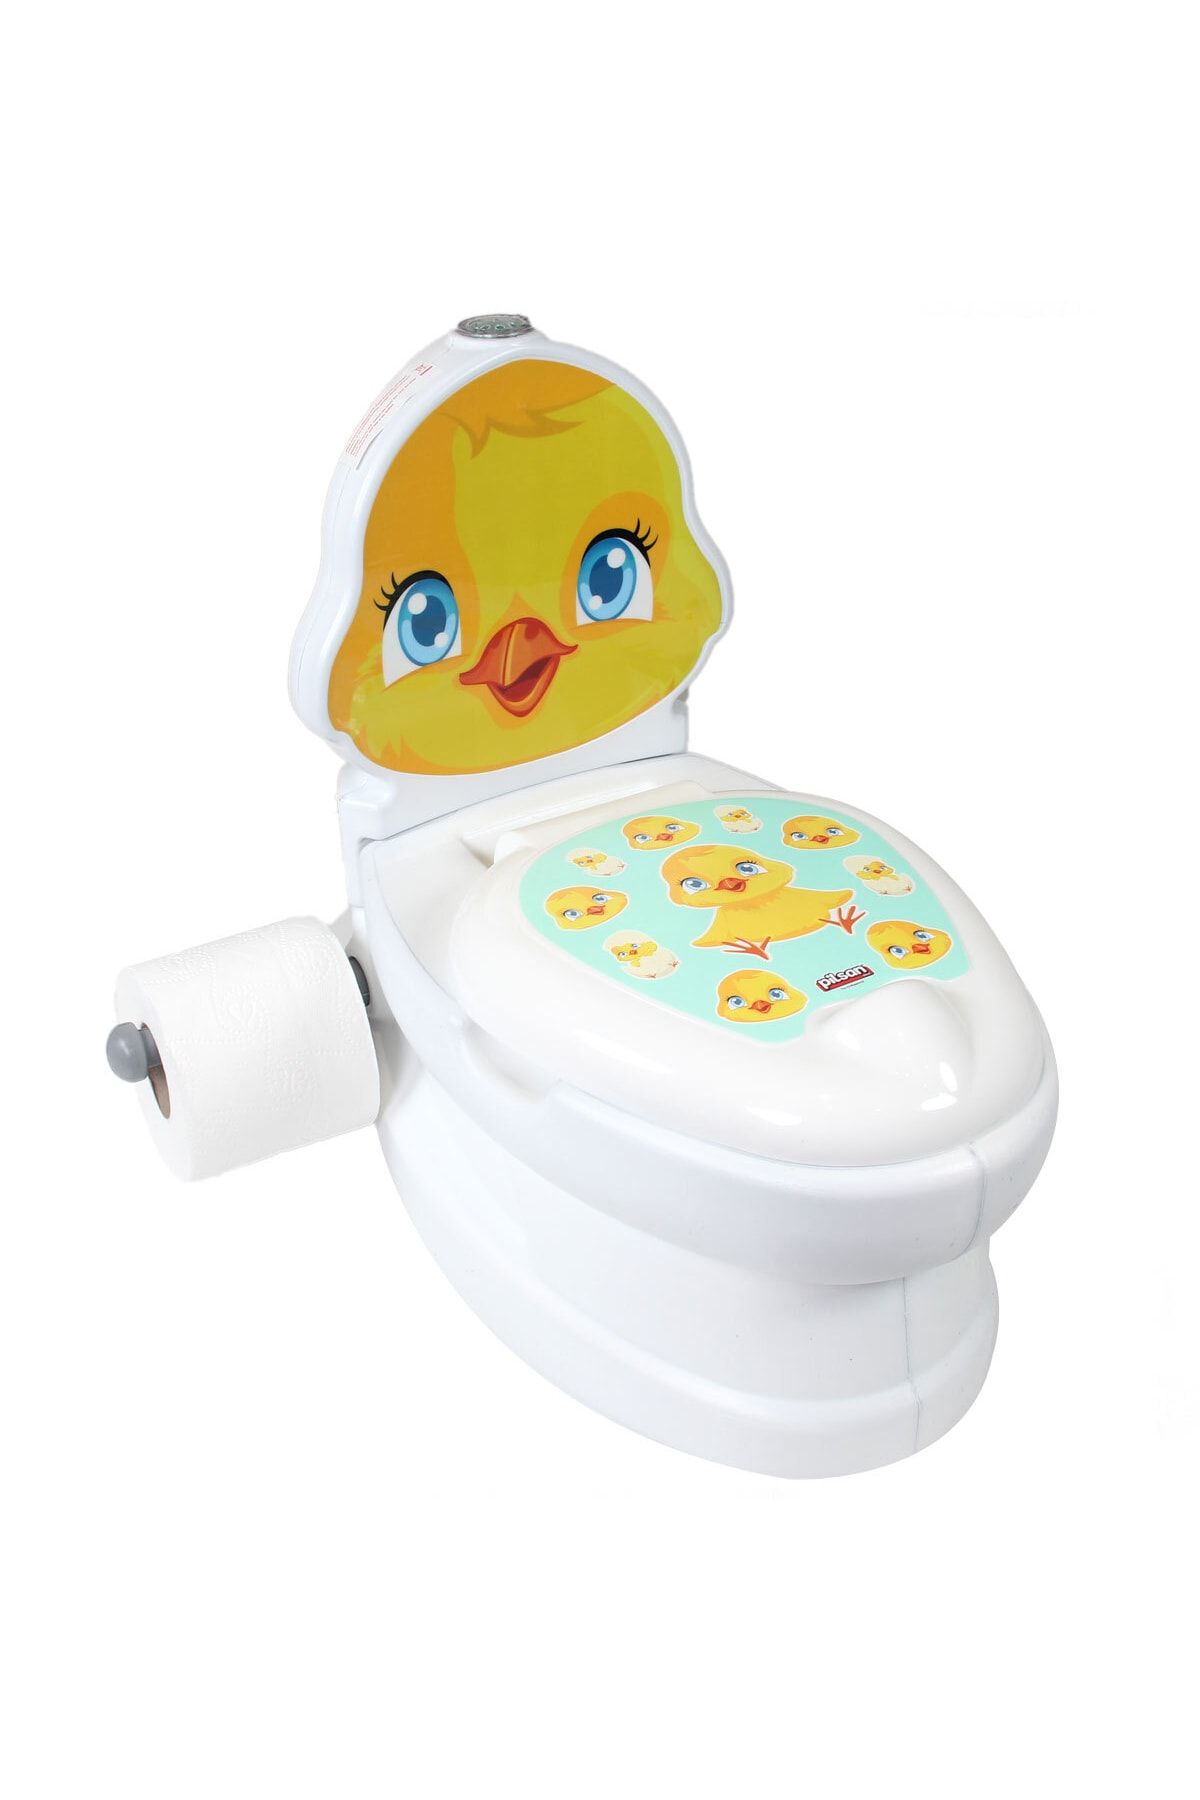 PİLSAN Sesli Işıklı Bebek Ve Çocuk Tuvalet Eğitimi Alıştırma Klozet Eğitici Civciv Şeklinde Klozet